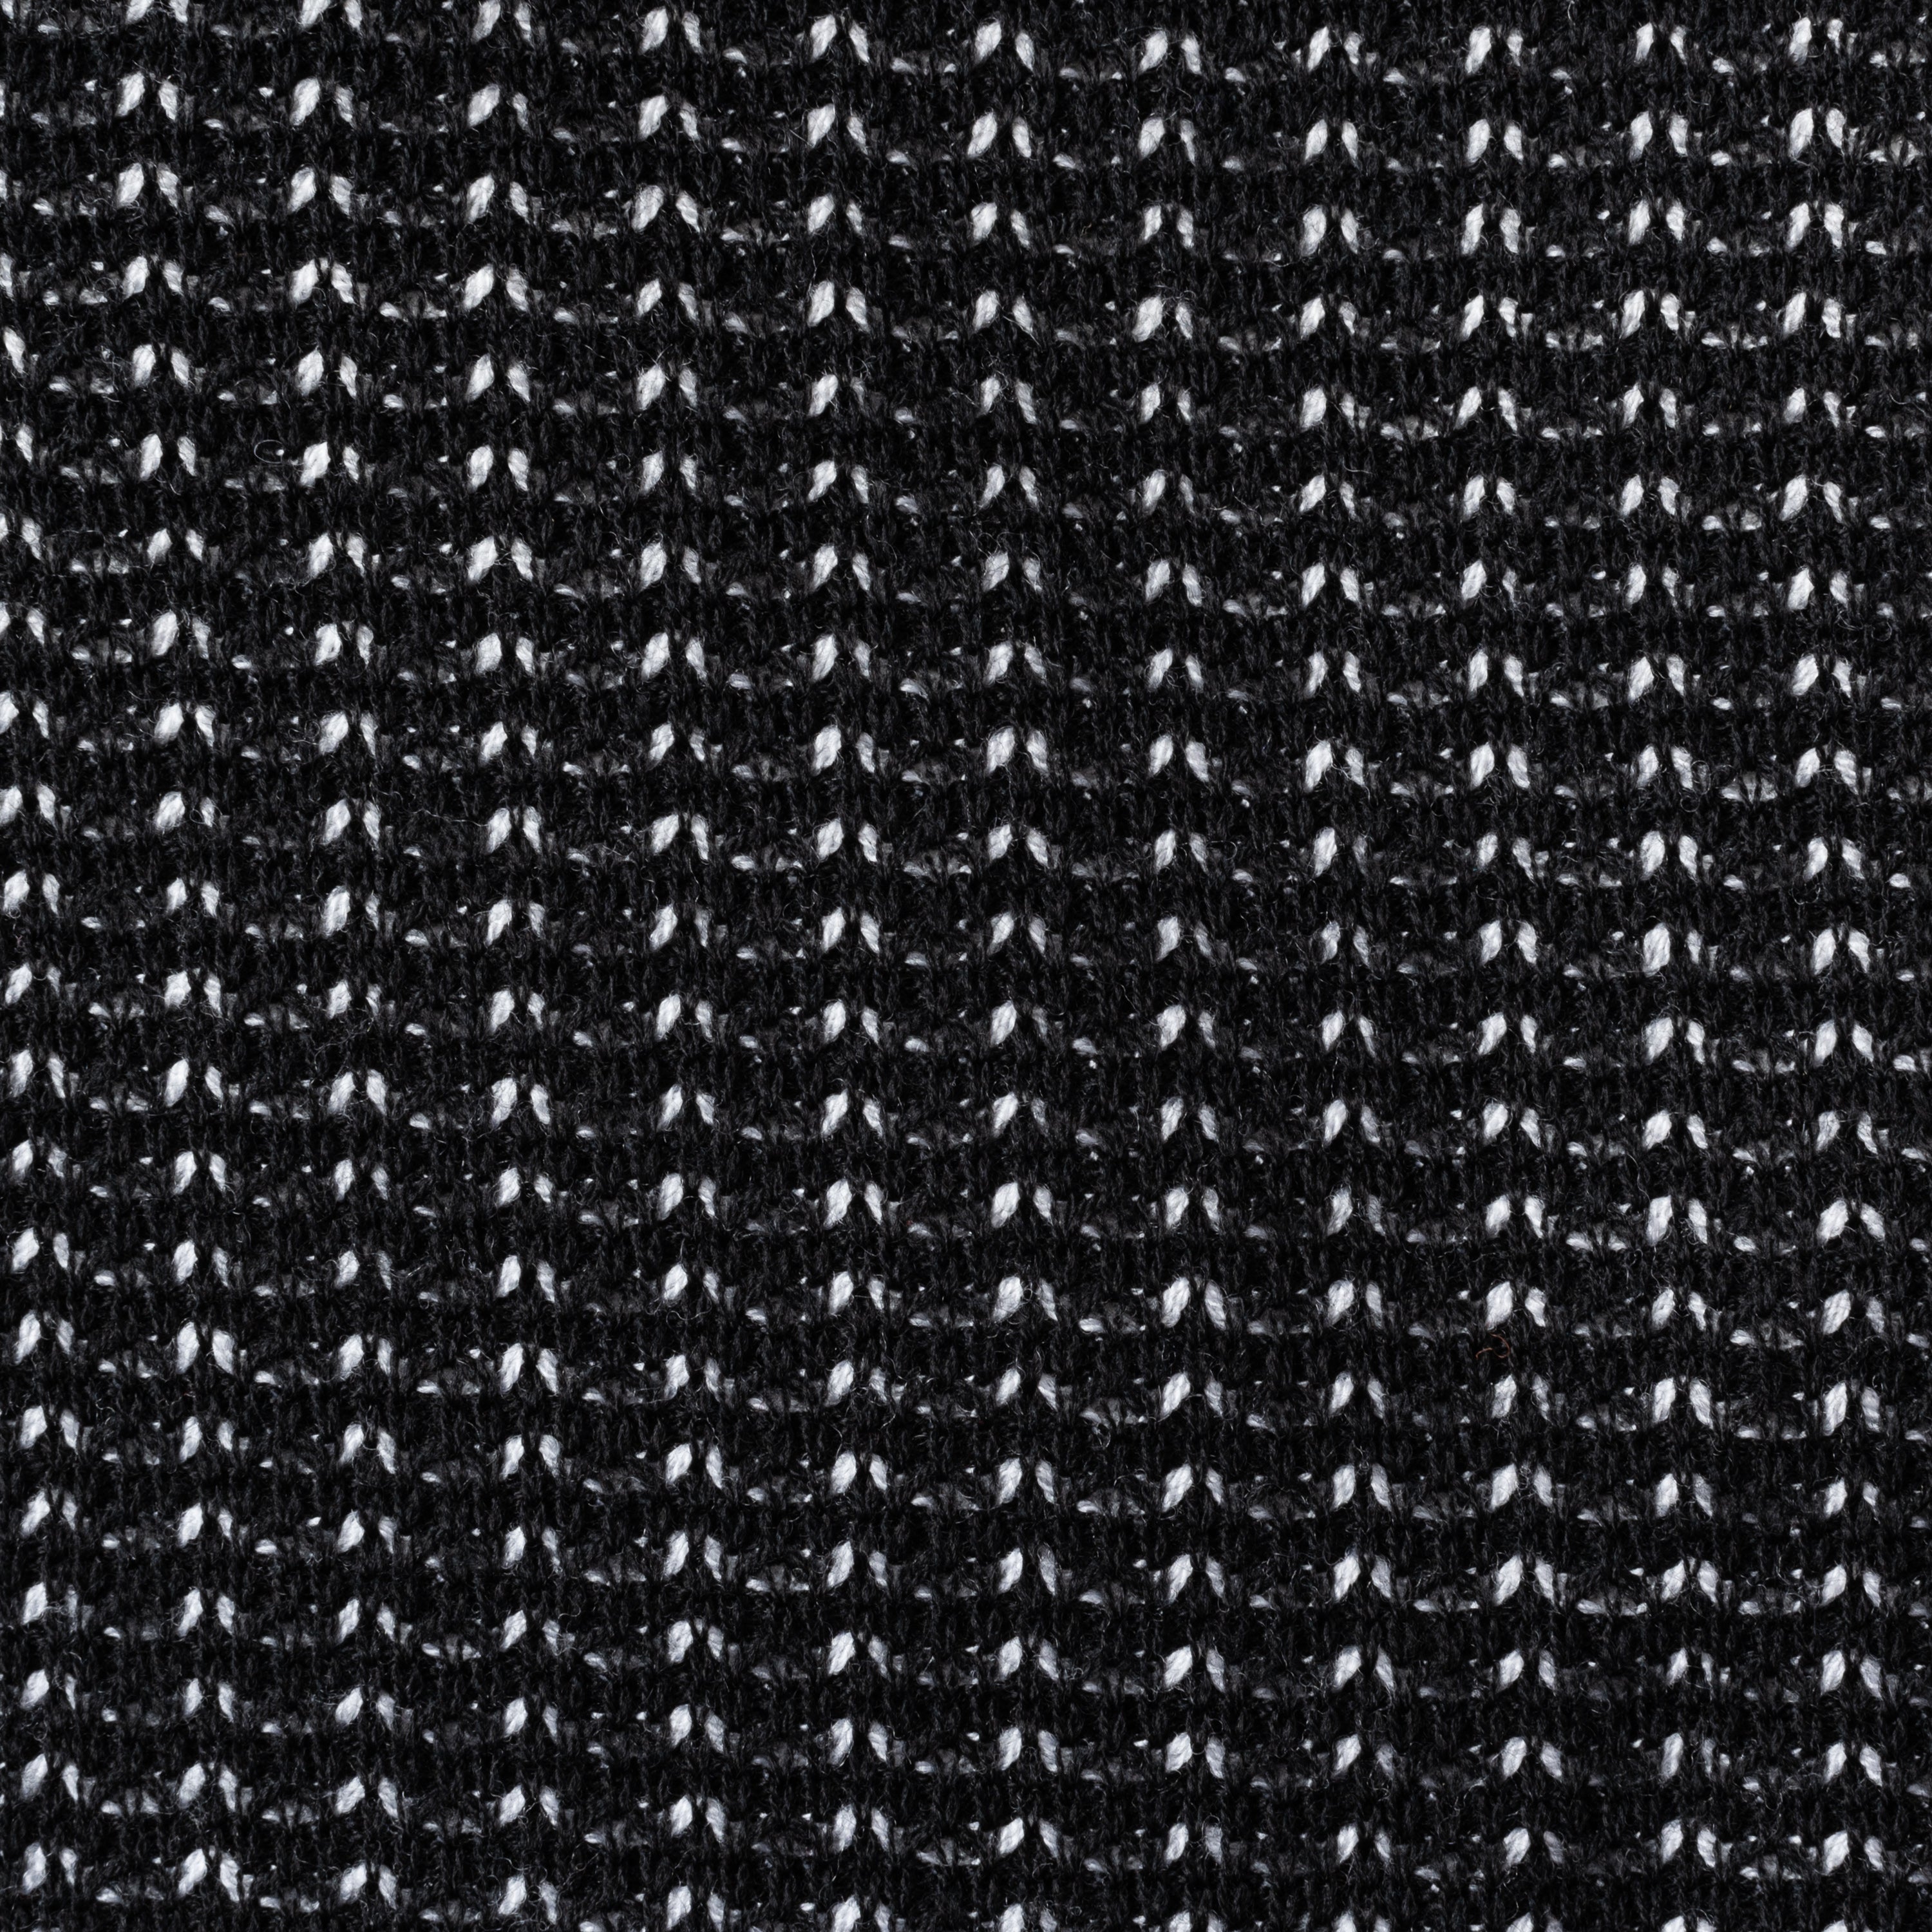 BERLUTI Paris Black Knitted Wool Cardigan Blazer Sweater EU 50 NEW US M BERLUTI